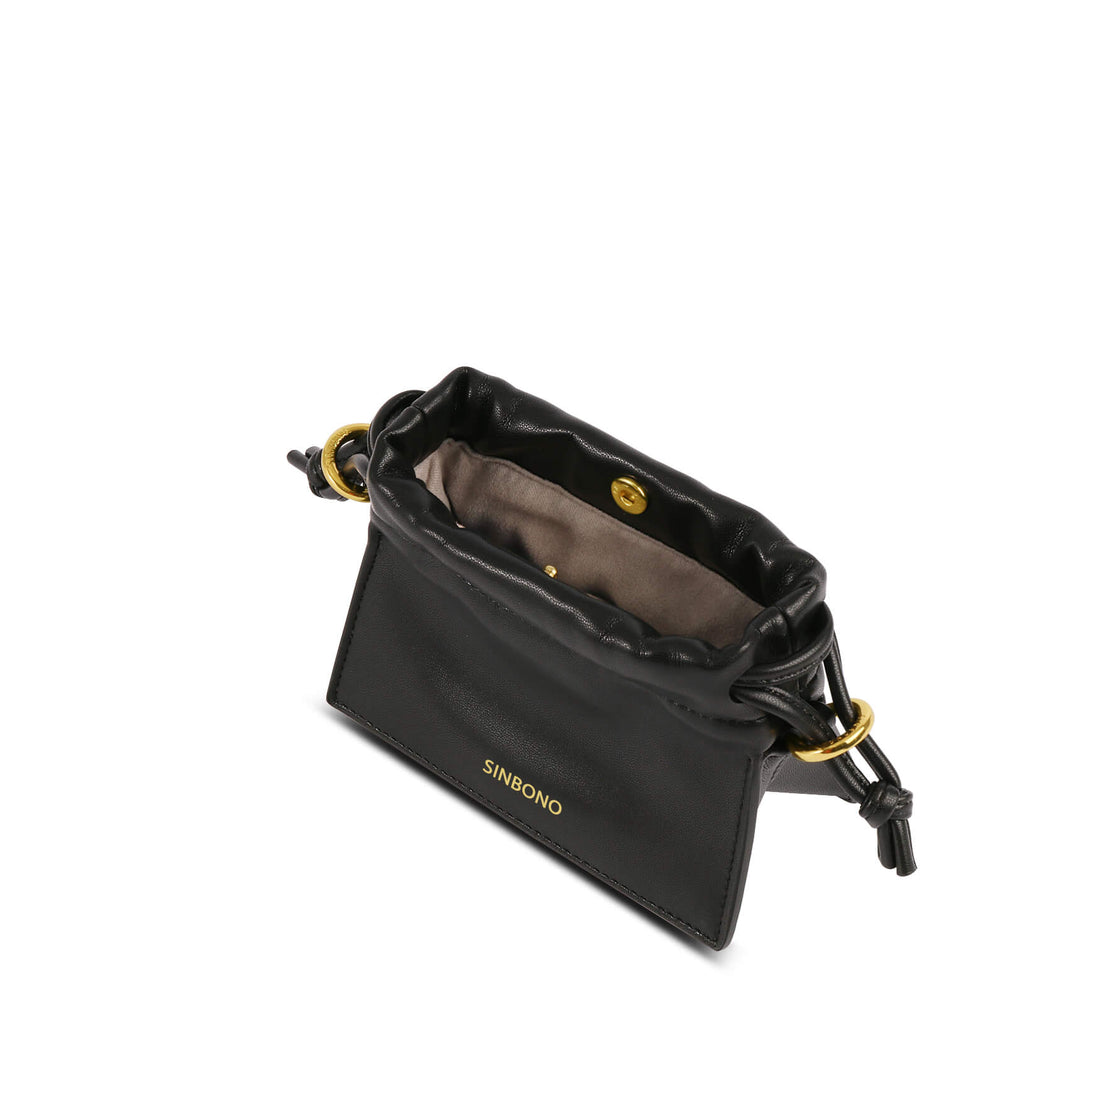 SINBONO Mini Drawstring Vegan Handbags Black